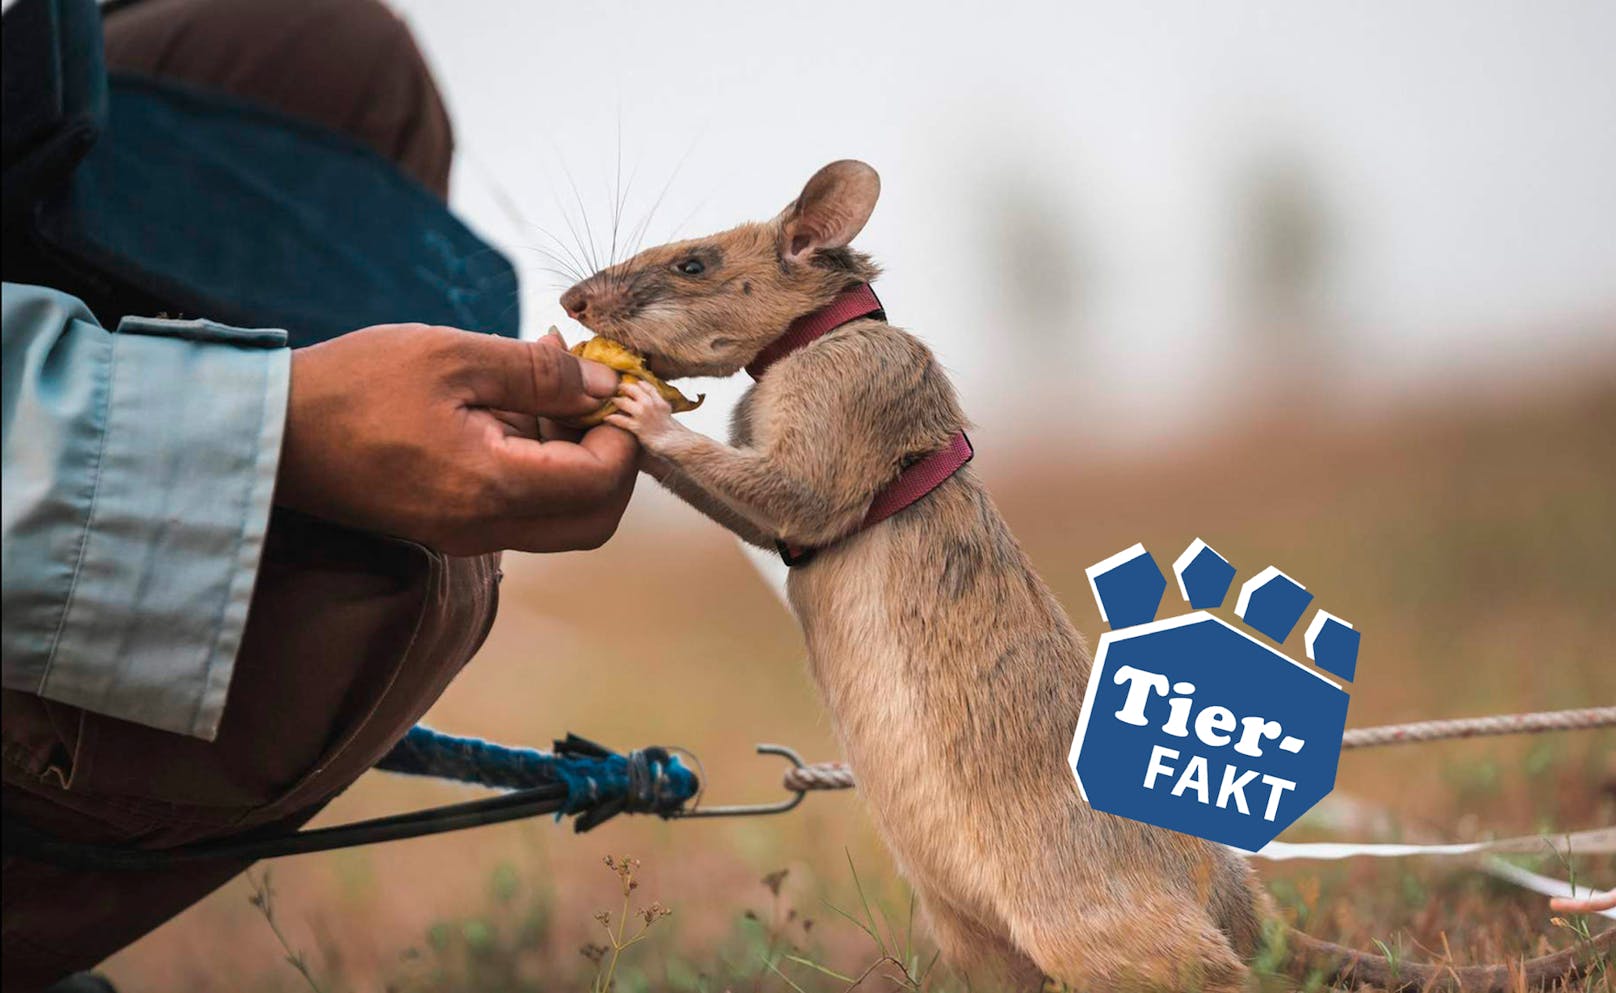 Diese Ratten retten Leben!  Die Organisation Apopo trainiert Afrikanische Hamsterratten darauf, Landminen zu erschnüffeln.  Sie werden dafür extra ausgebildet. Anders als Hunde überleben sie den Einsatz meist, weil sie so leicht sind. Die Ratten tragen so dazu bei, große Landstriche Afrikas zu entminen und das Land wieder für die Bevölkerung nutzbar zu machen.